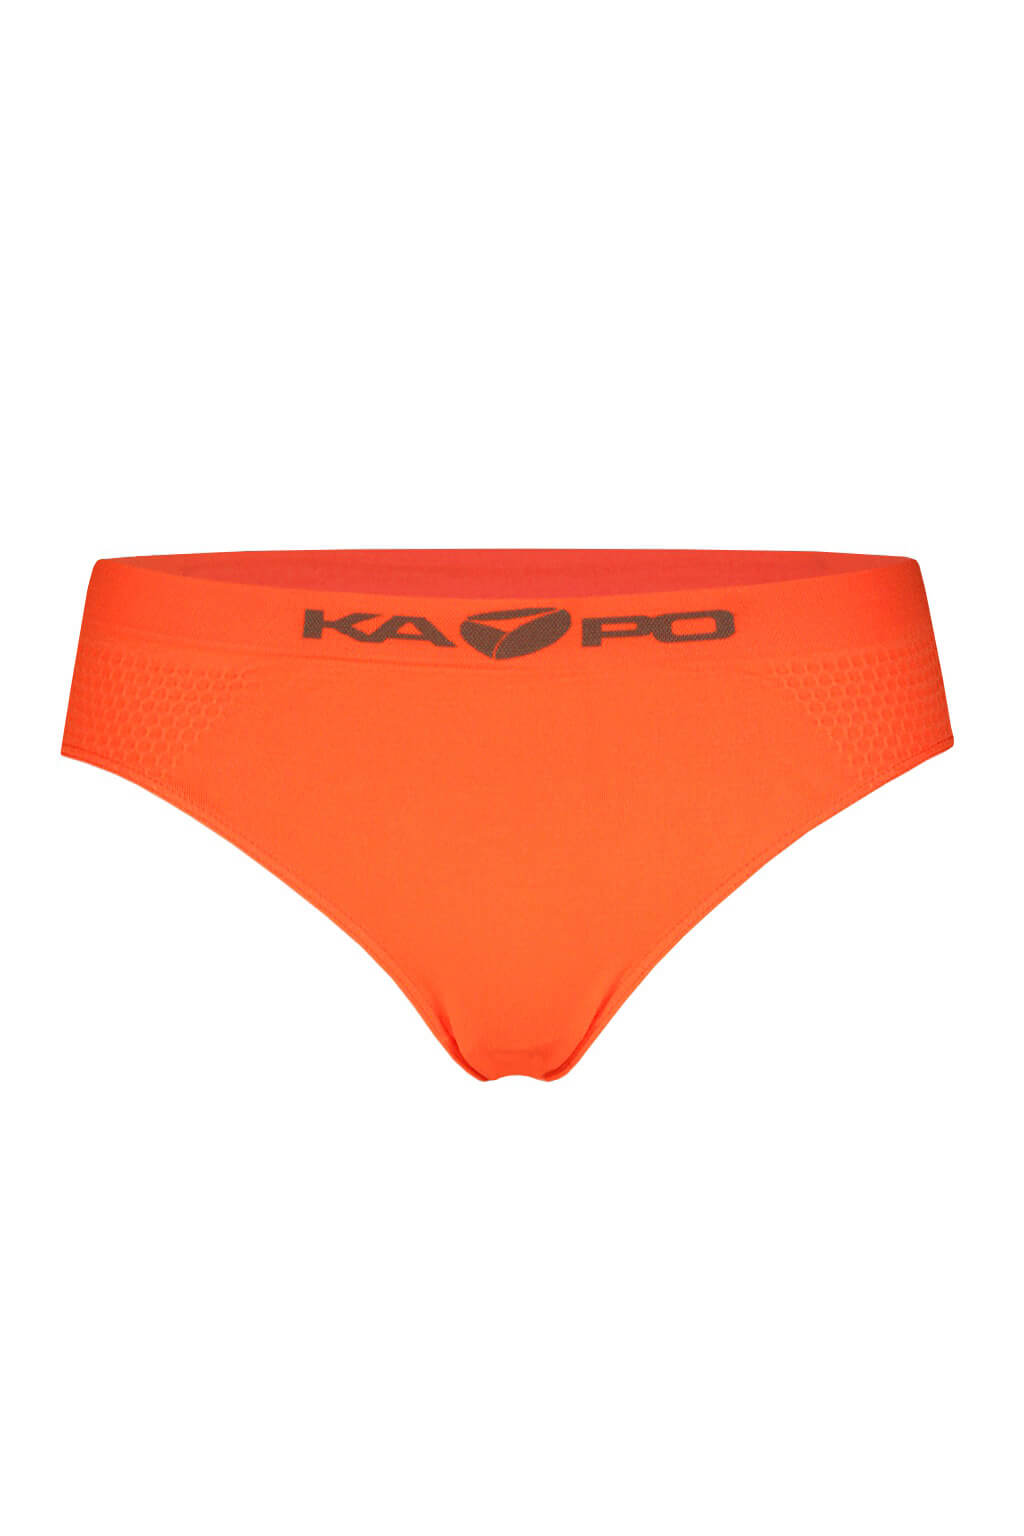 KAPO sportovní funkční kalhotky XL oranžová zářivá